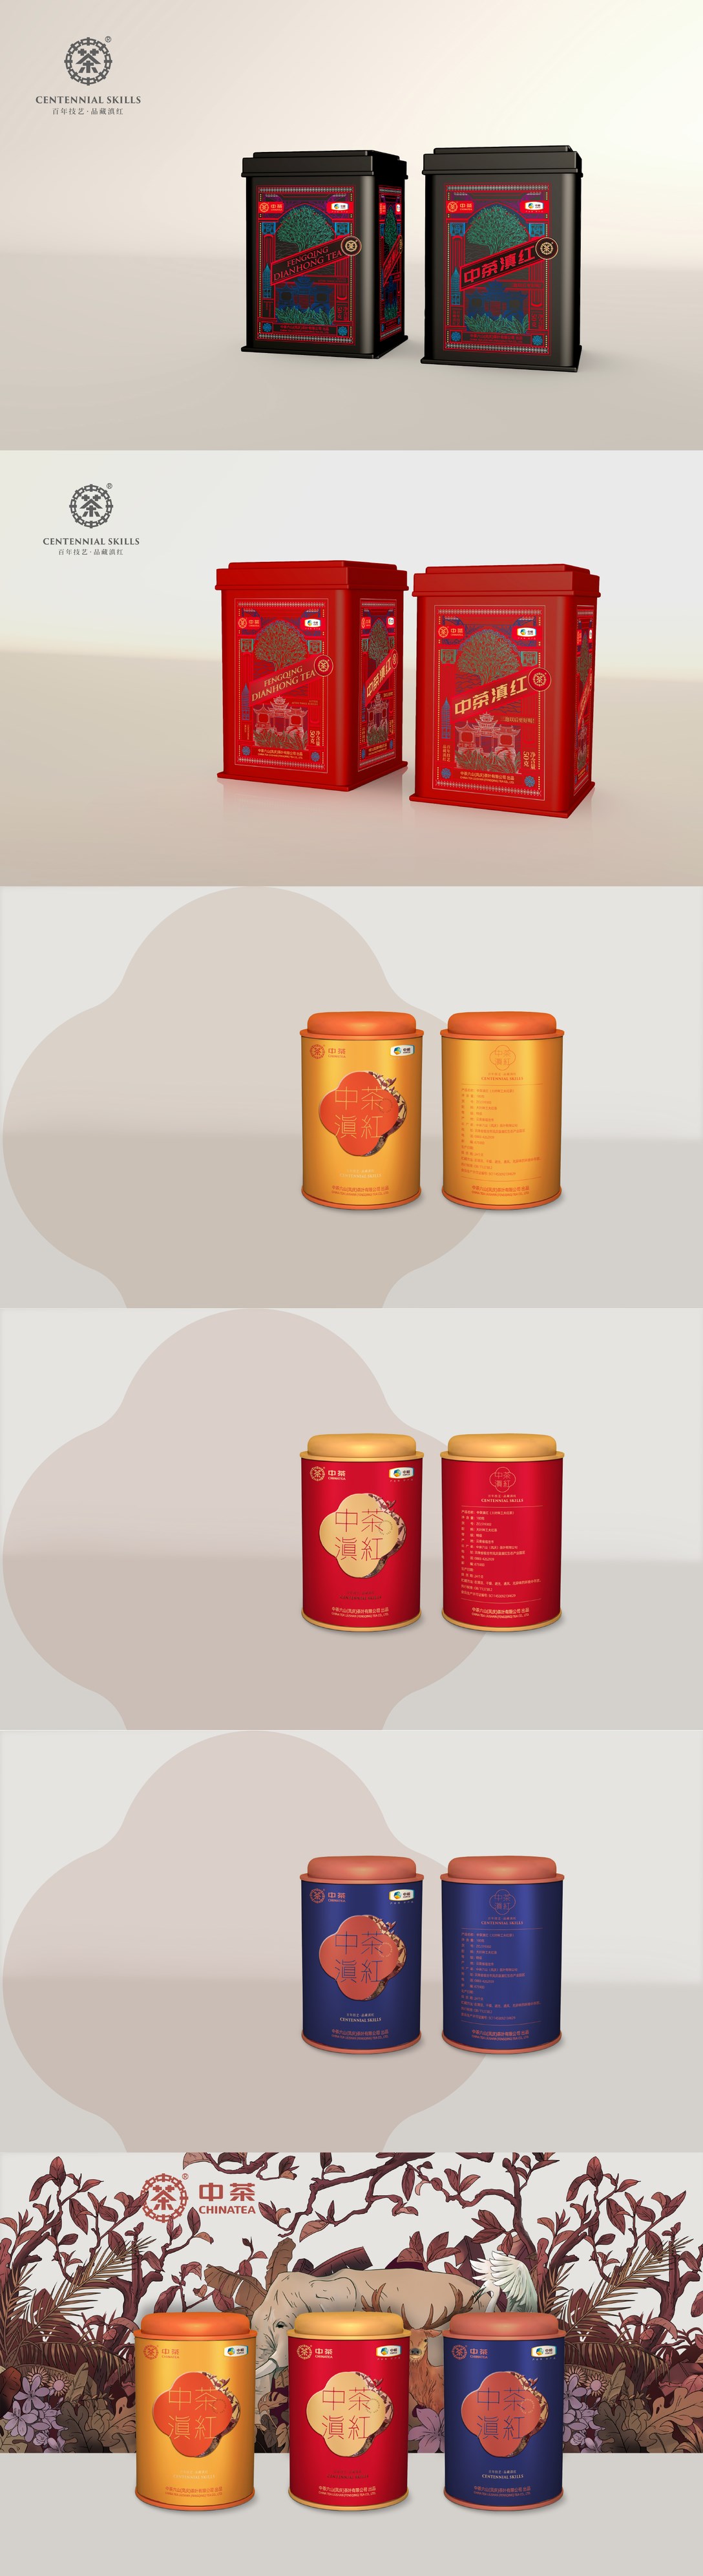 2019年红茶类包装设计总结